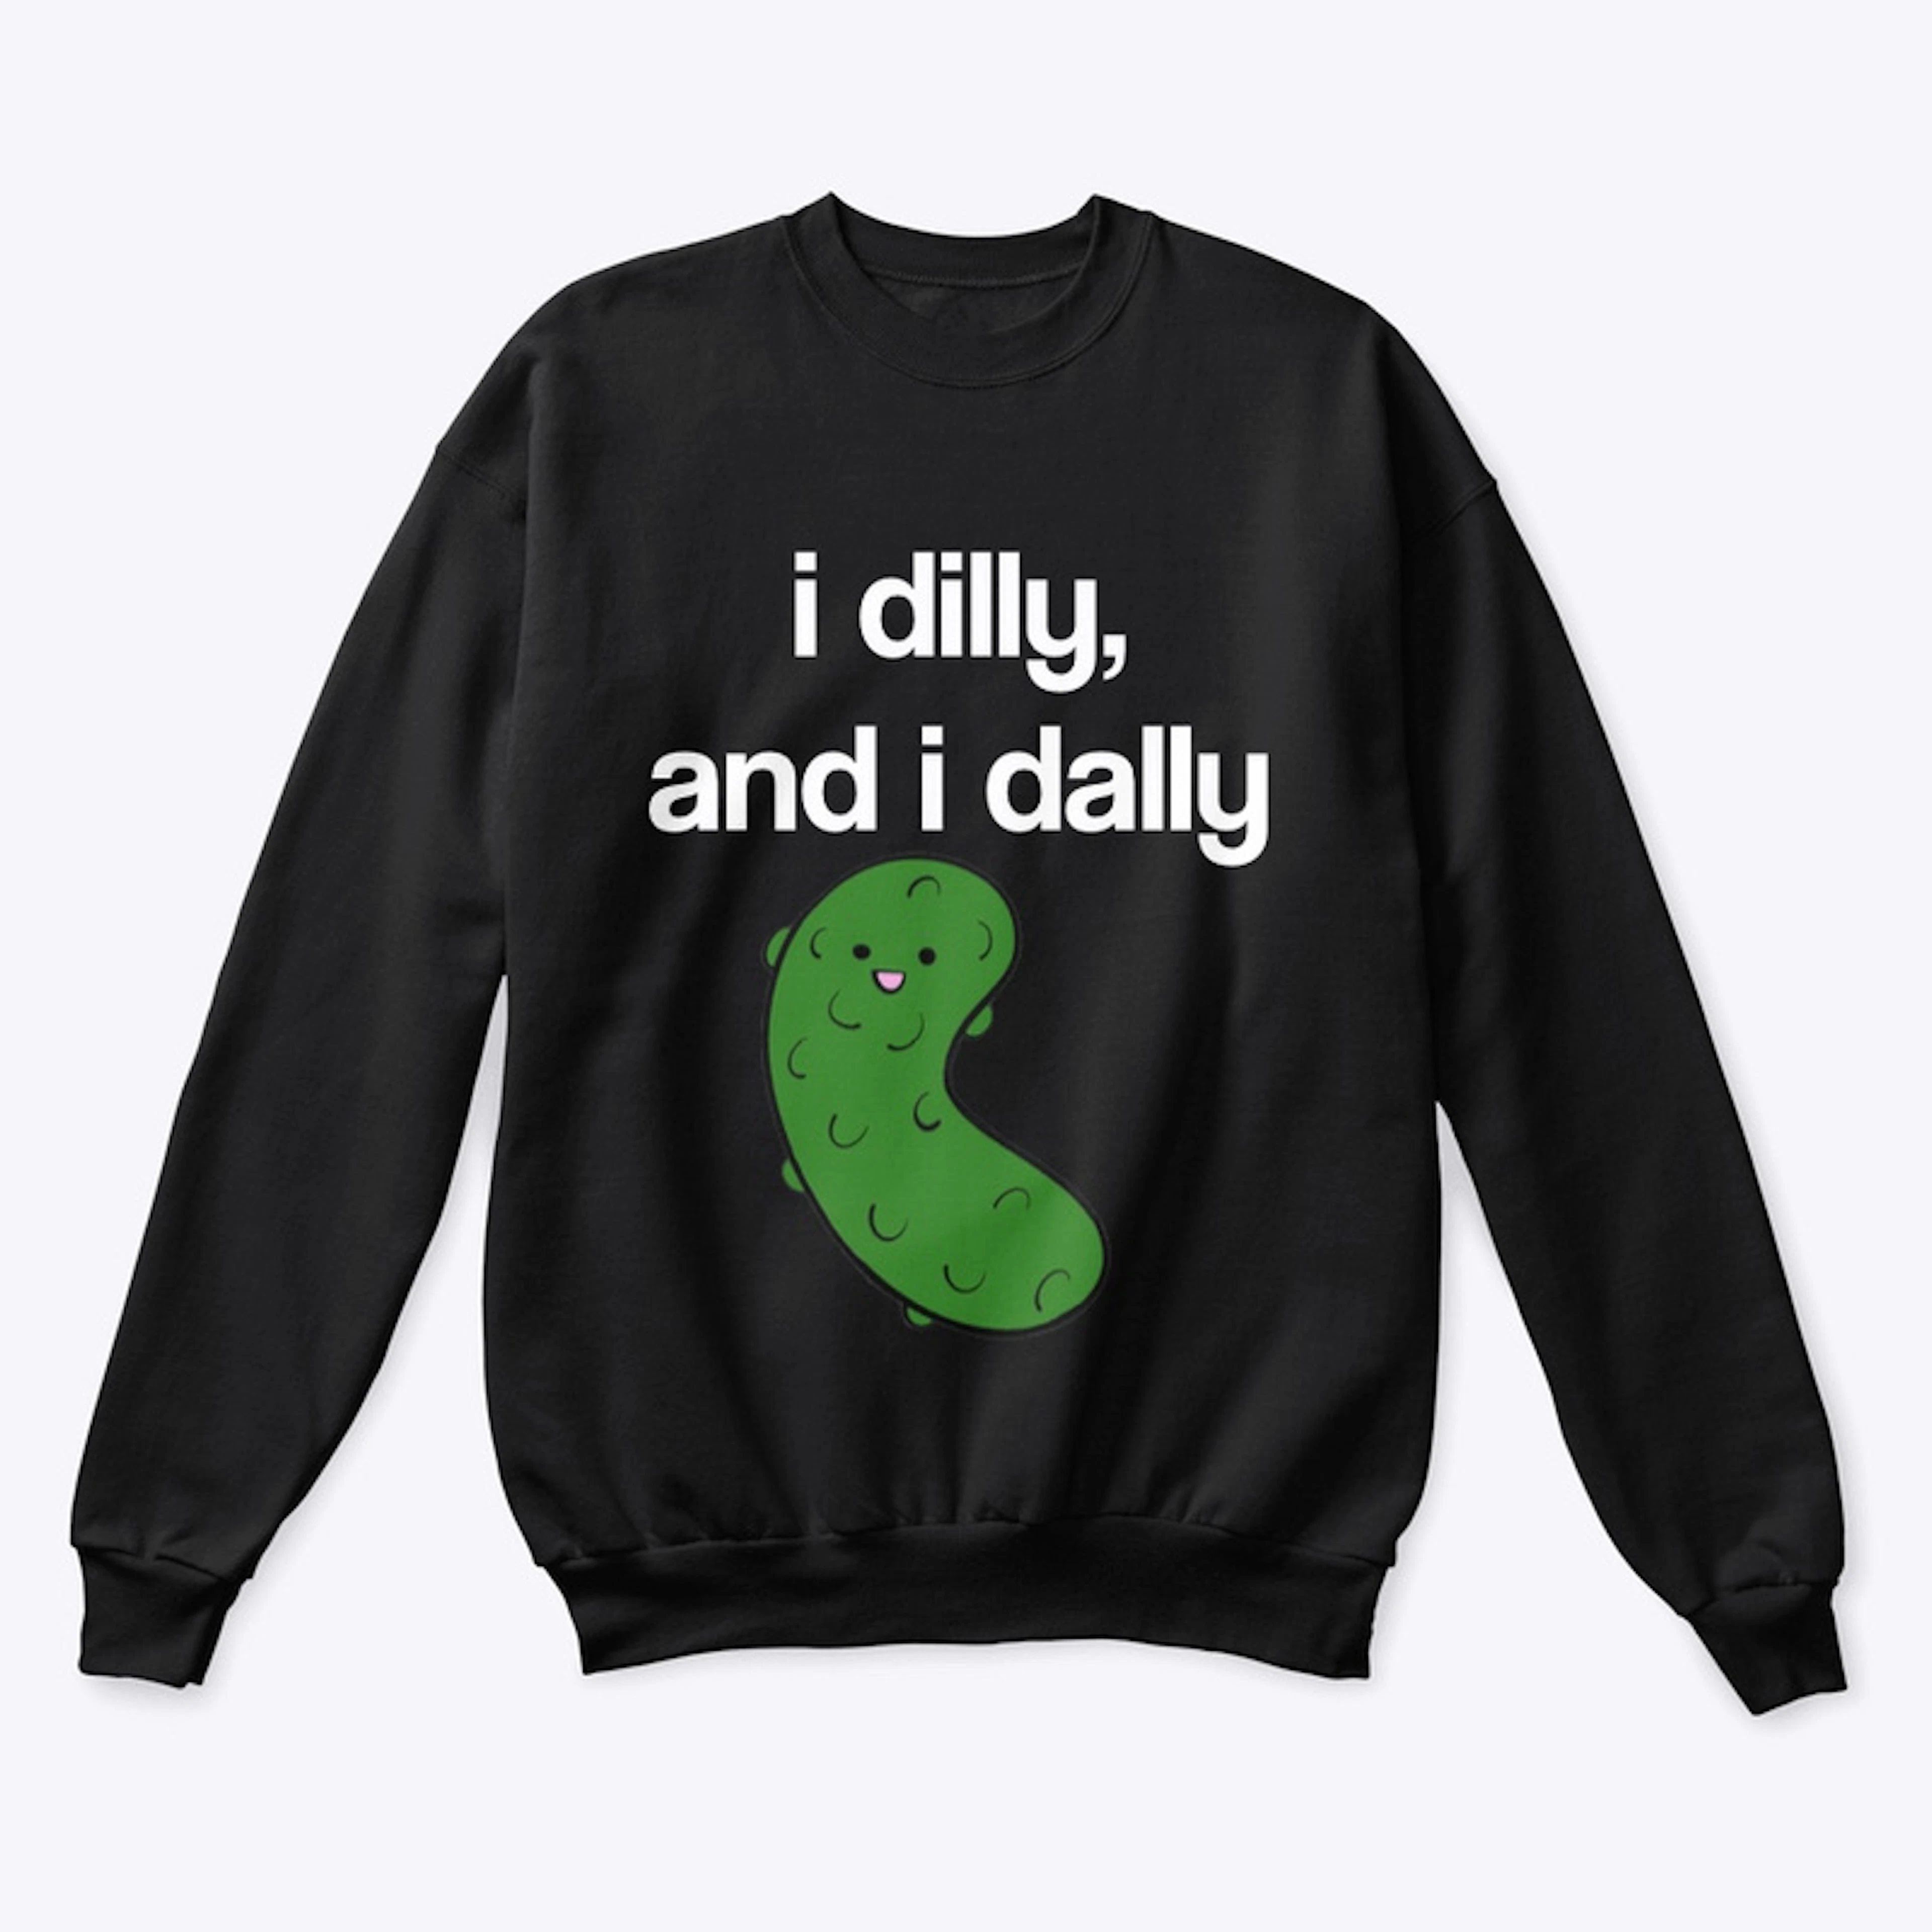 I dilly and I dally sweatshirt 